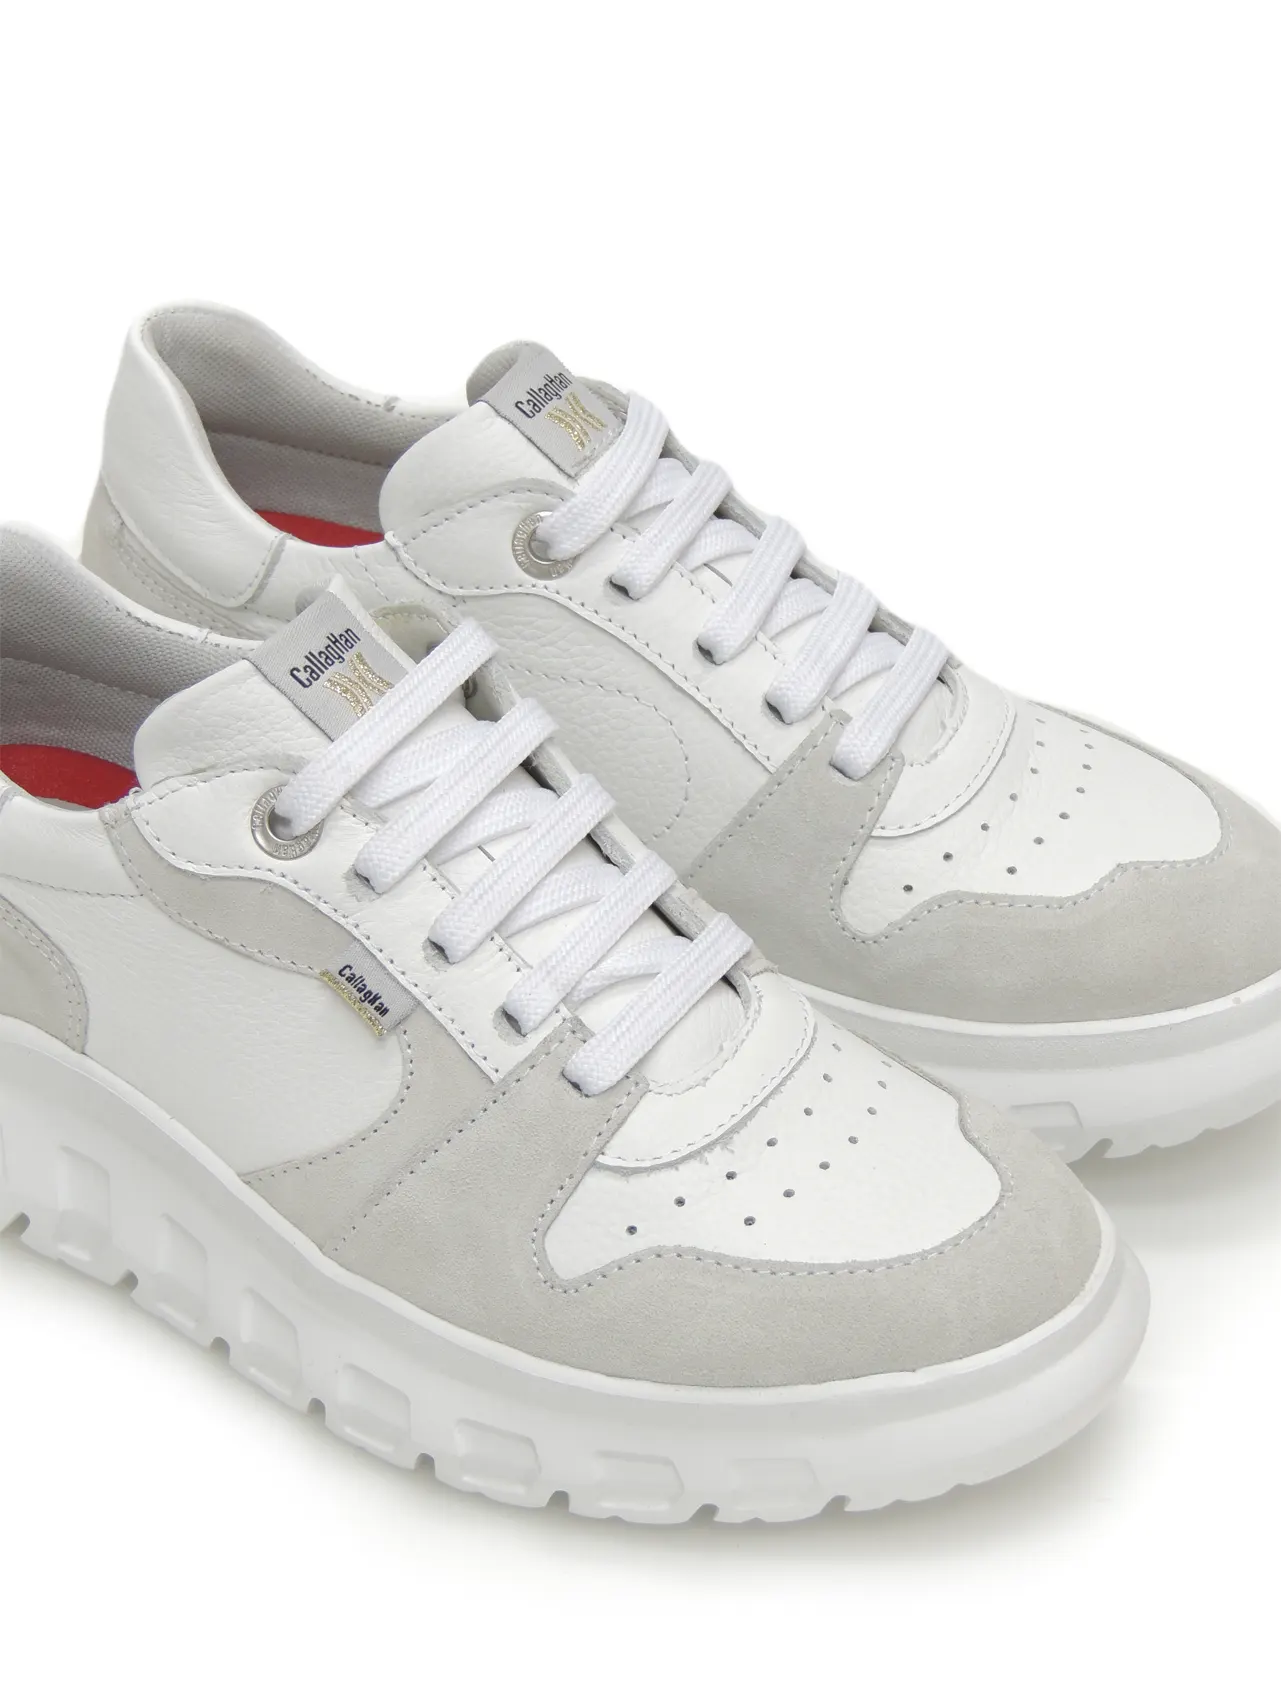 sneakers--callaghan-56002-piel-blanco